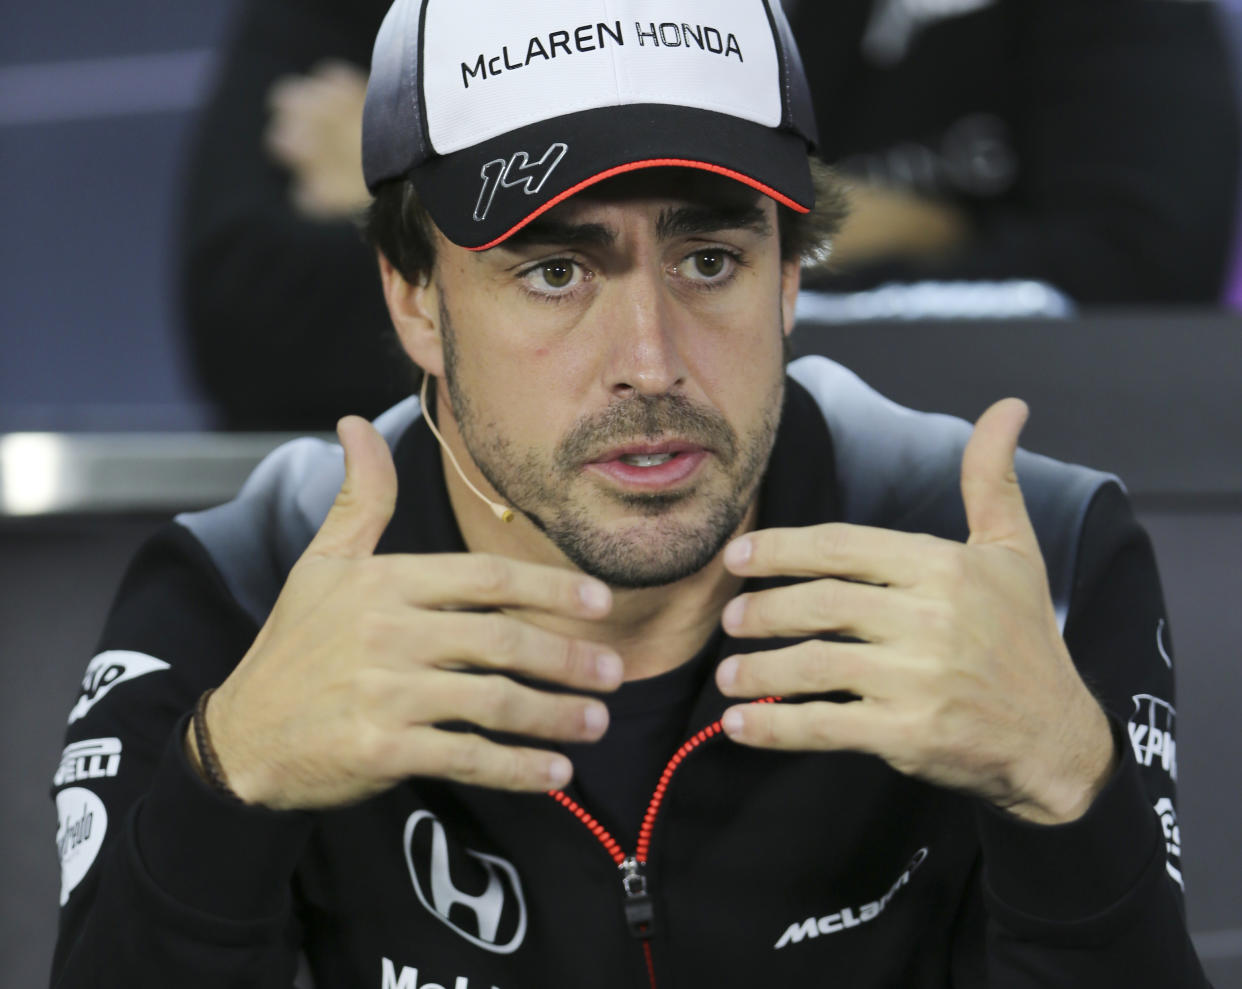 El piloto de McLaren, Fernando Alonso, habla en una conferencia de prensa antes del GP de Bahrein el jueves, 31 de marzo de 2016, en Sakhir, Bahrein. (AP Photo/Kamran Jebreili)